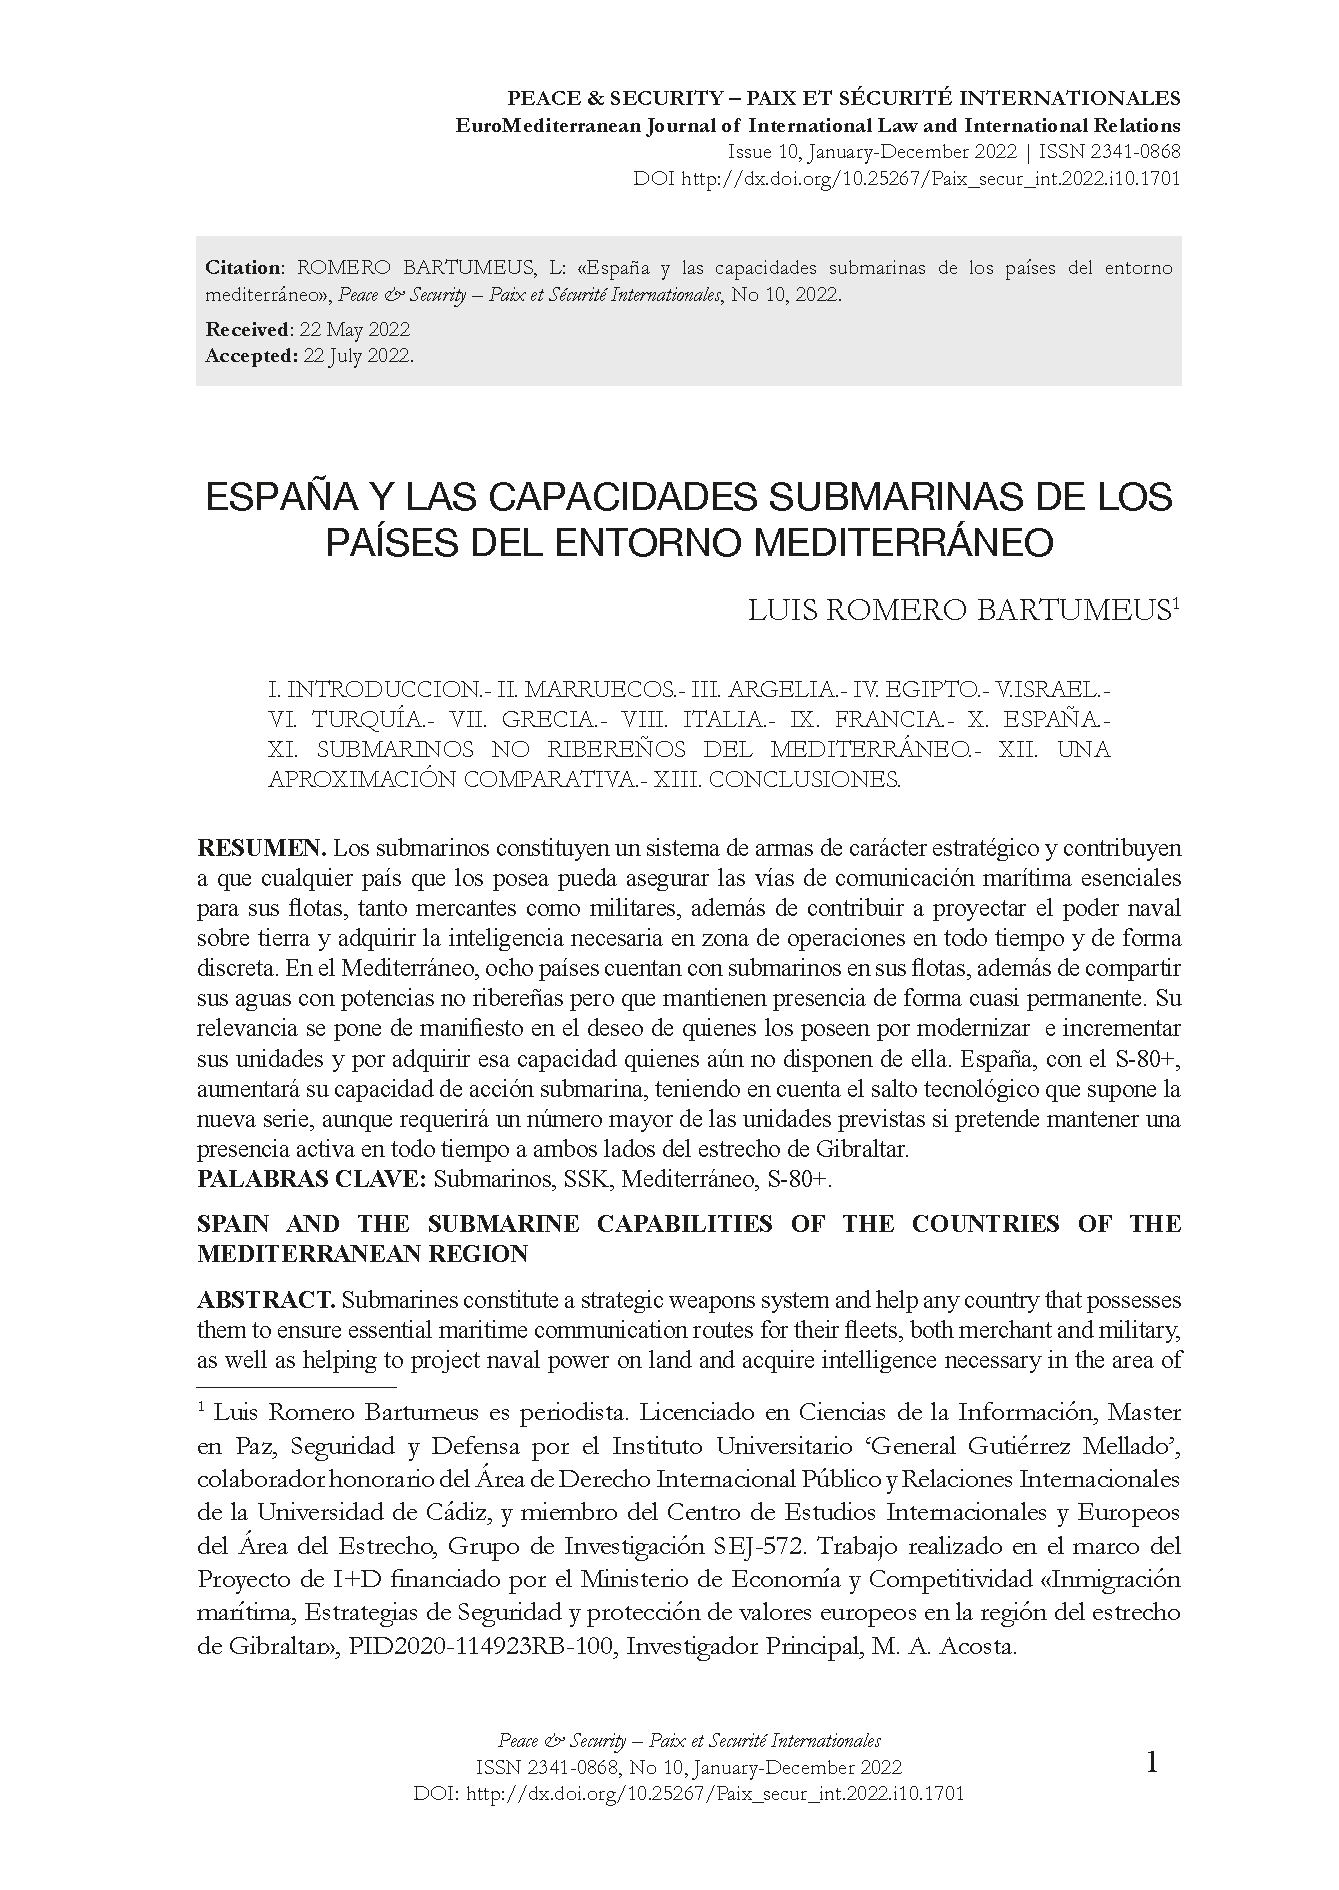 España y las capacidades submarinas de los países del entorno mediterráneo